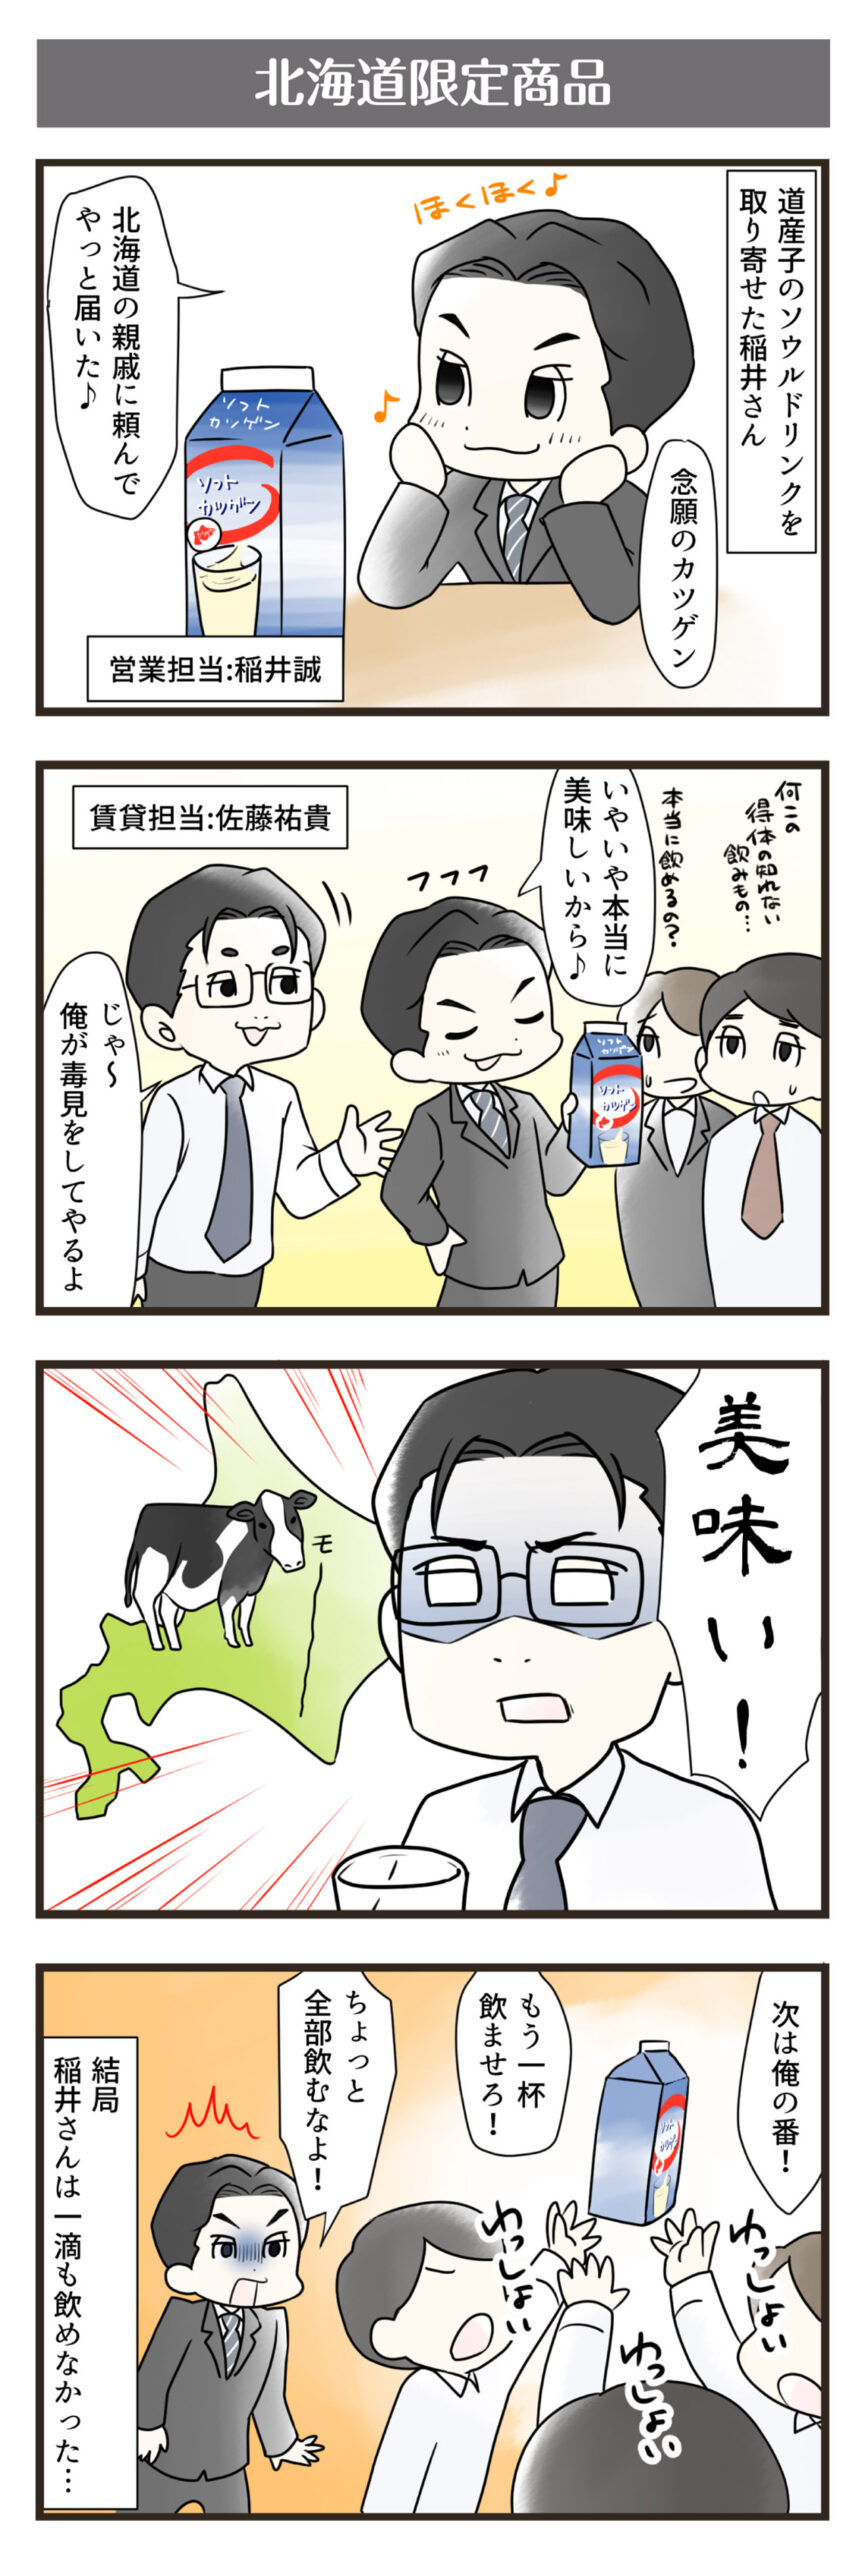 横浜スタイル4コマ漫画10月分